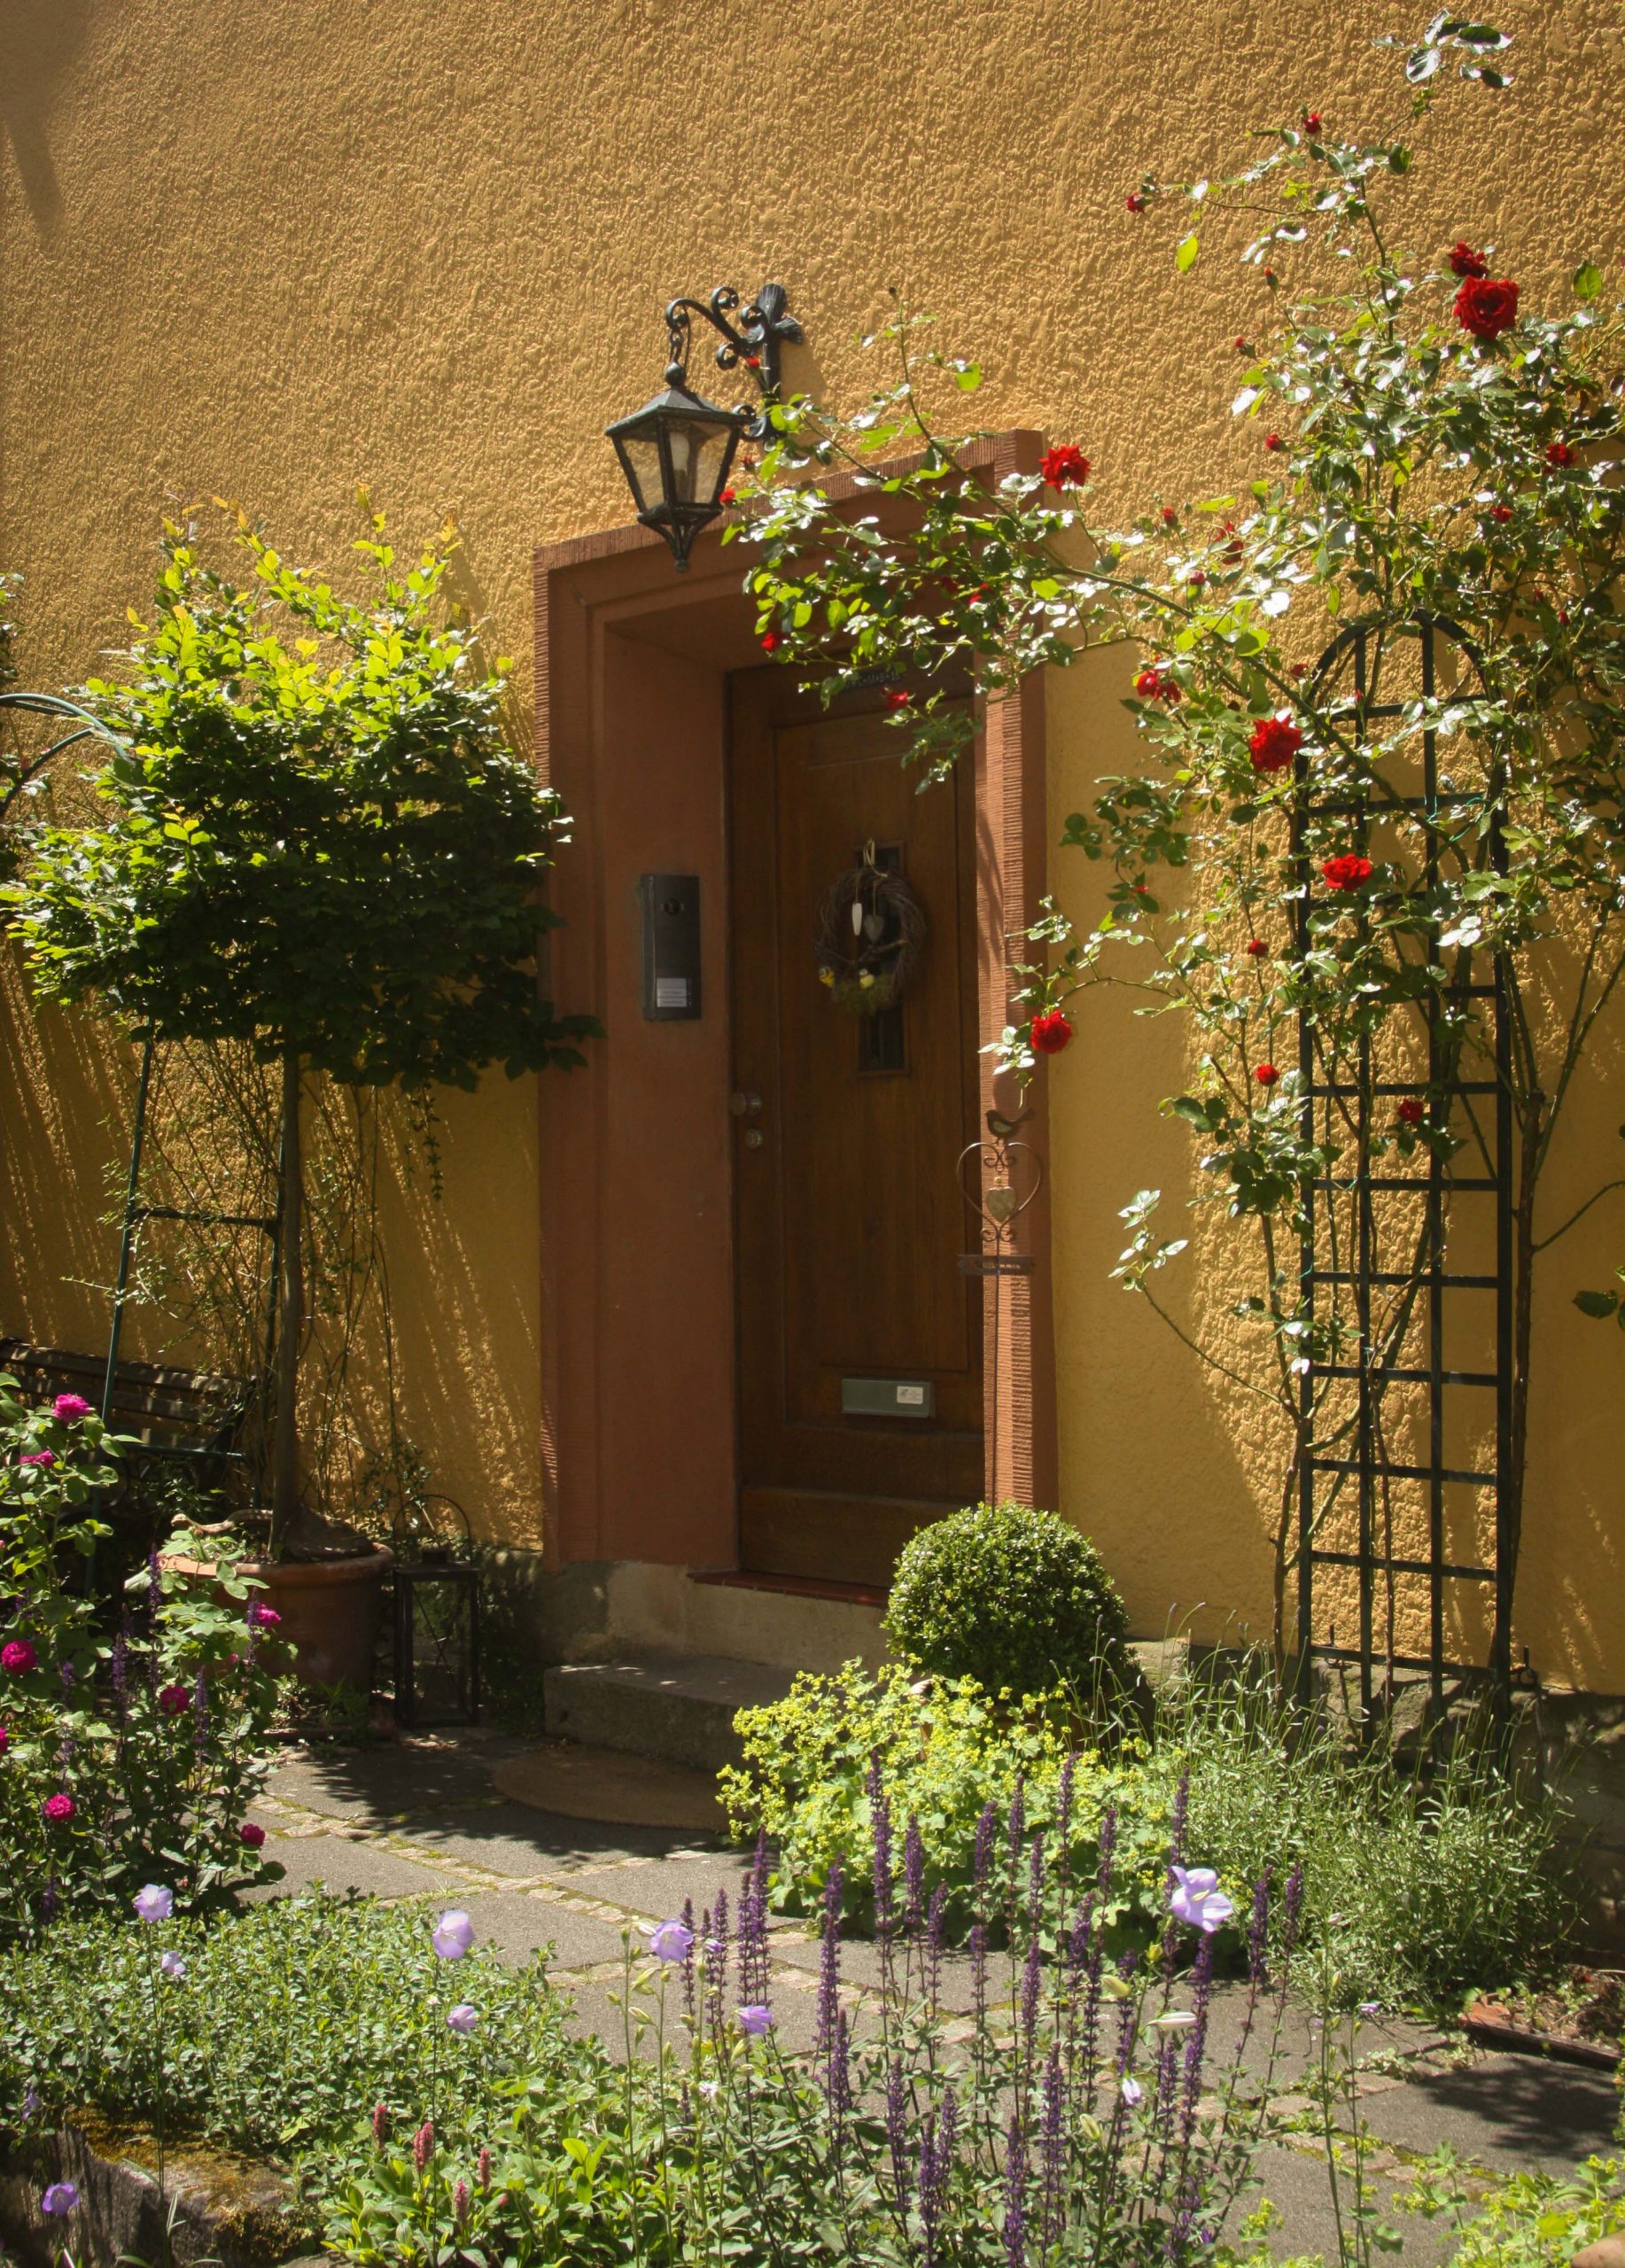 Eingangstür zum Haus der Ferienwohnung umsäumt von viel Grün und blühenden Pflanzen, wie Lavendel oder Rosen.